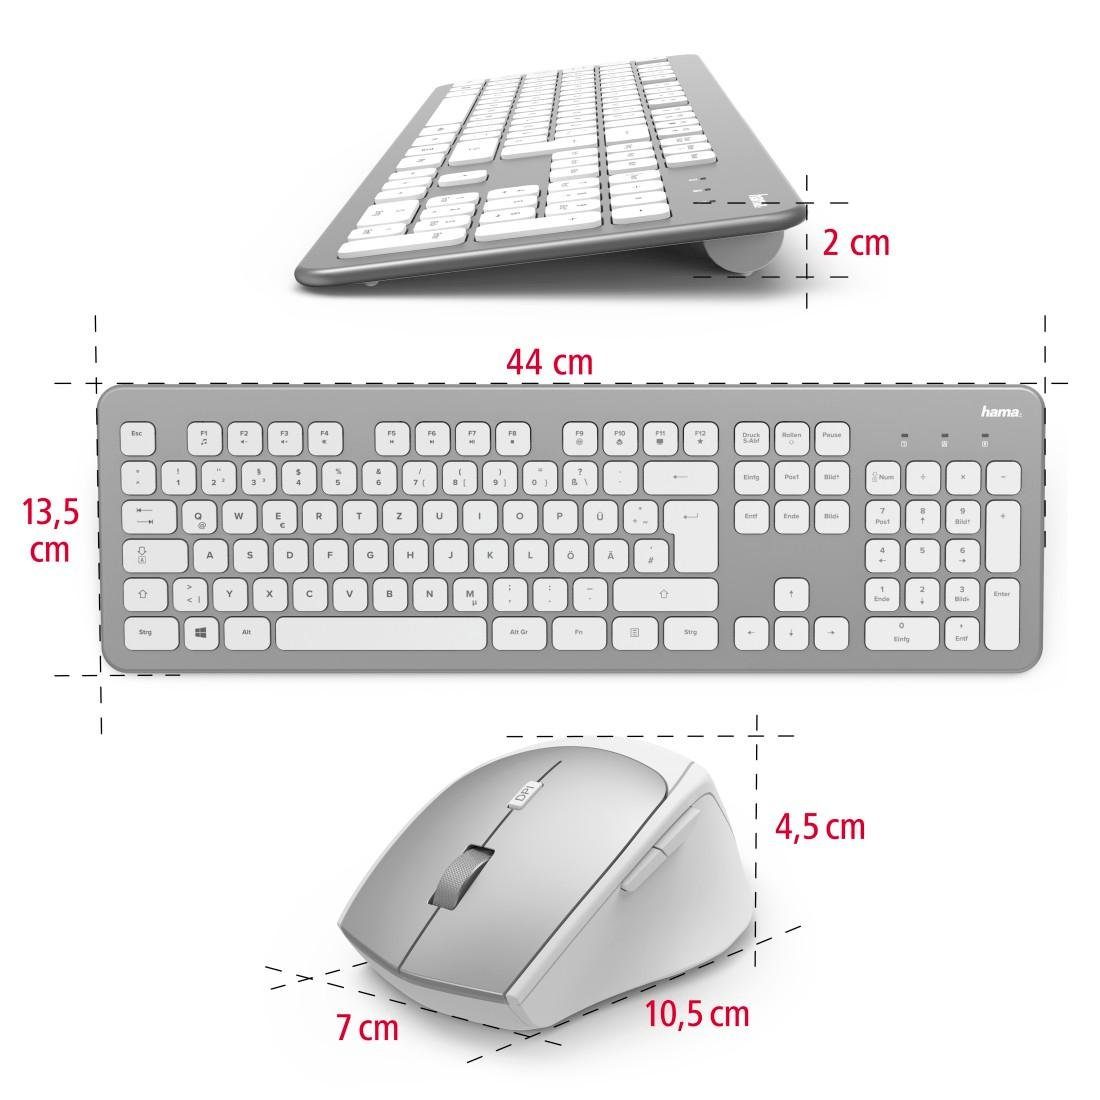 und Tastatur/Maus-Set Hama Funktastatur-/Maus-Set Tastatur- weiß "KMW-700" Maus-Set